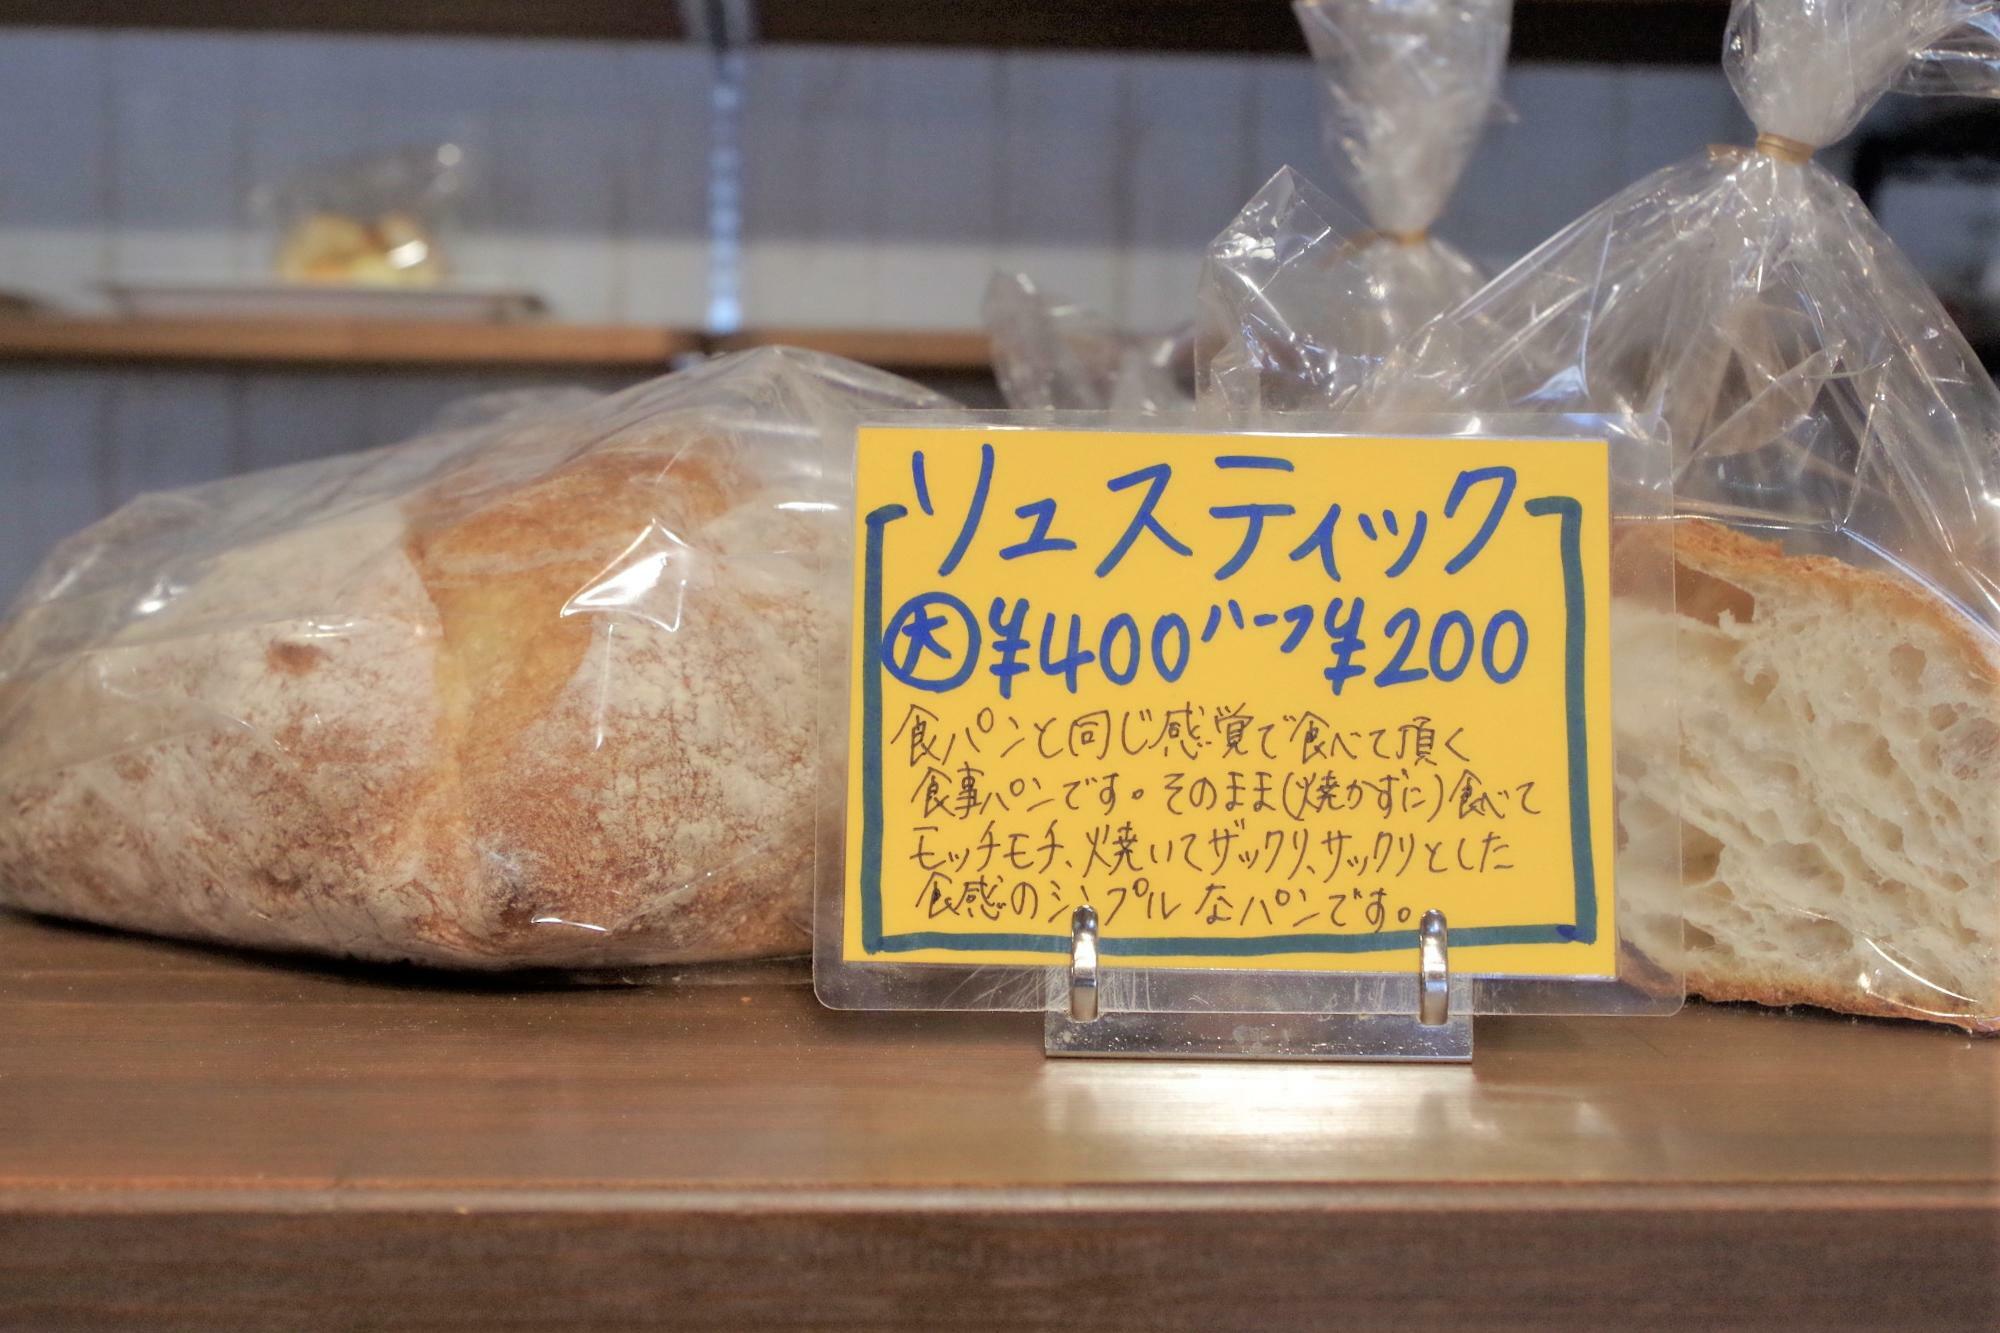 パンの時間の総菜パンのベースにも使われているシンプルなパン